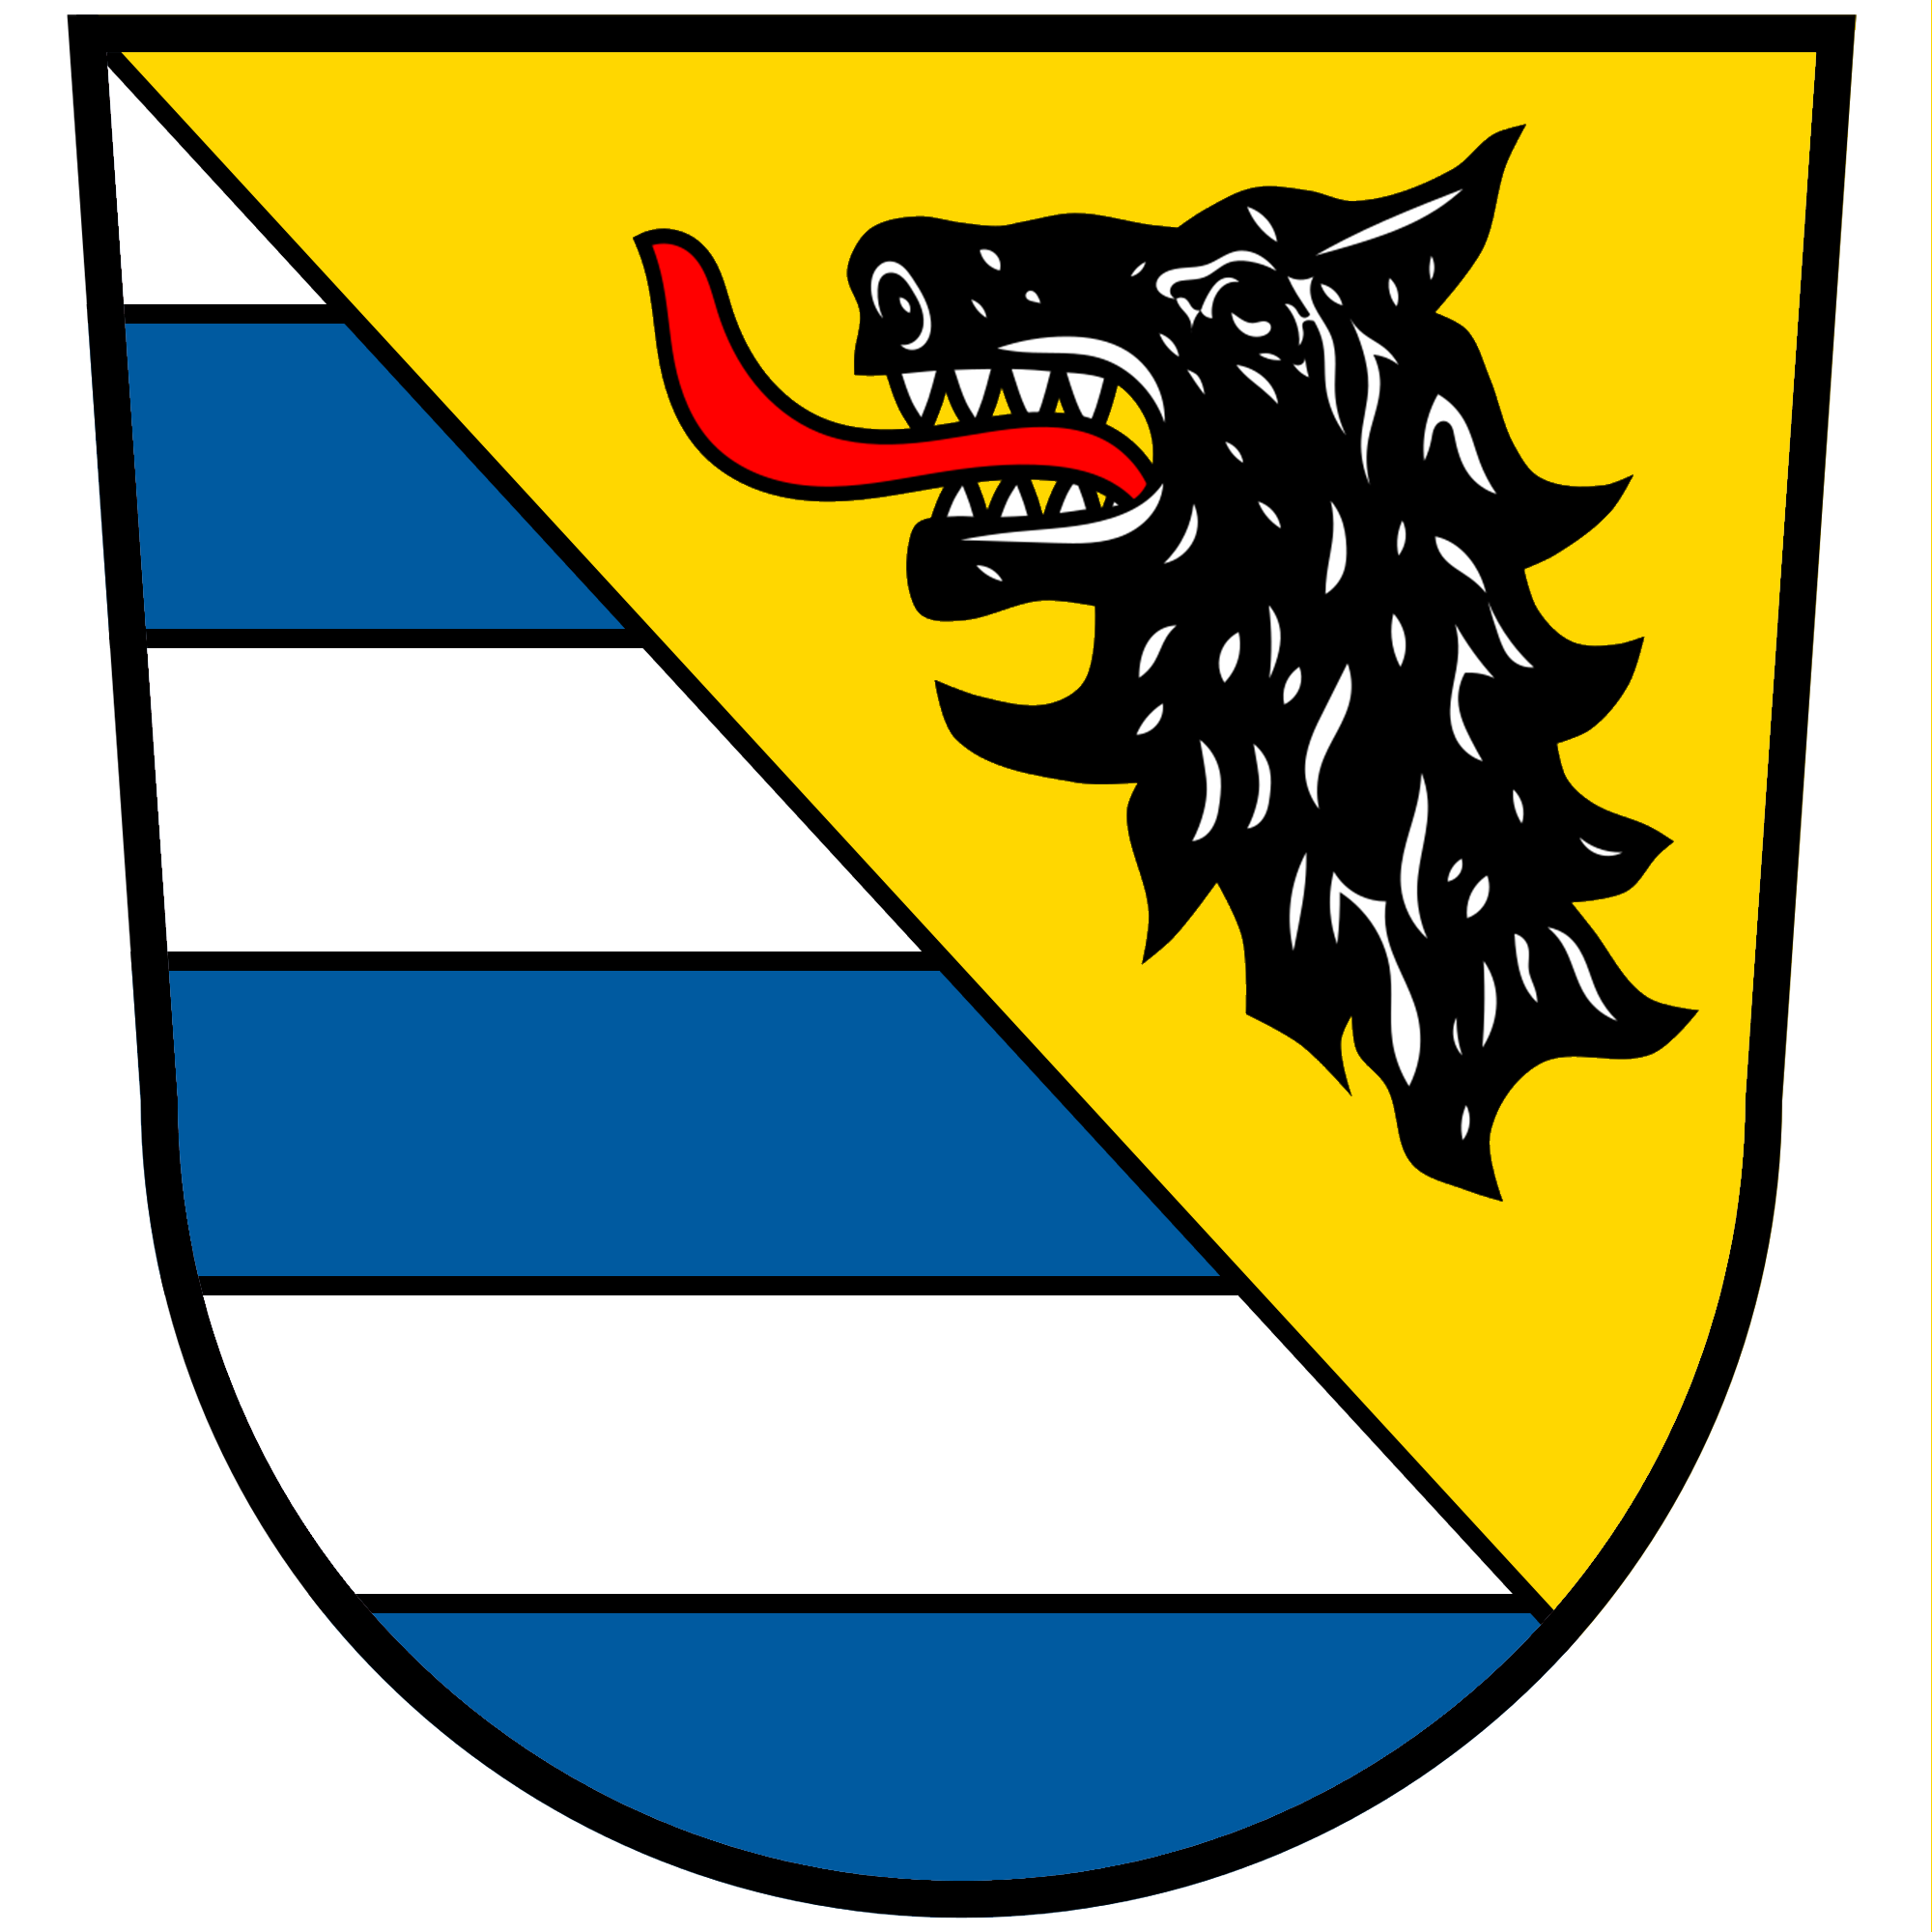 Wappen für VG Seite